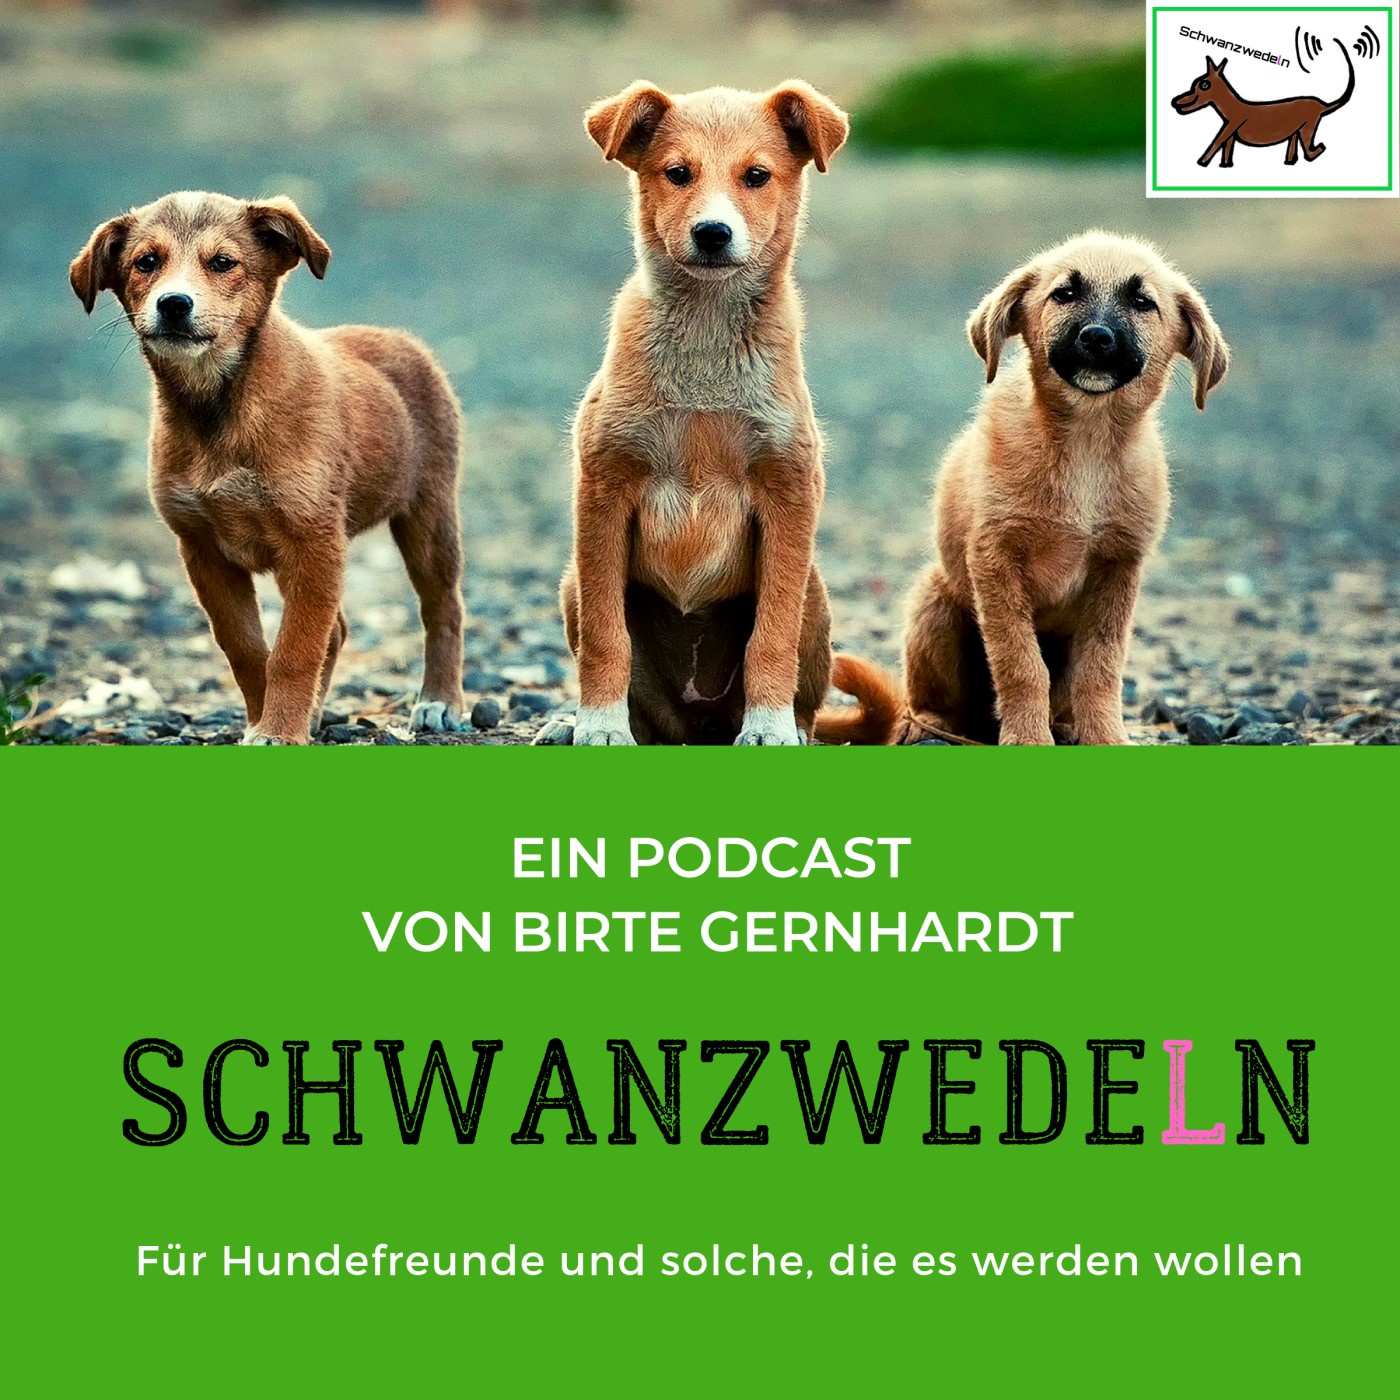 64 Rosengarten Stiftung - Gemeinsam für Mensch und Tier e.V.